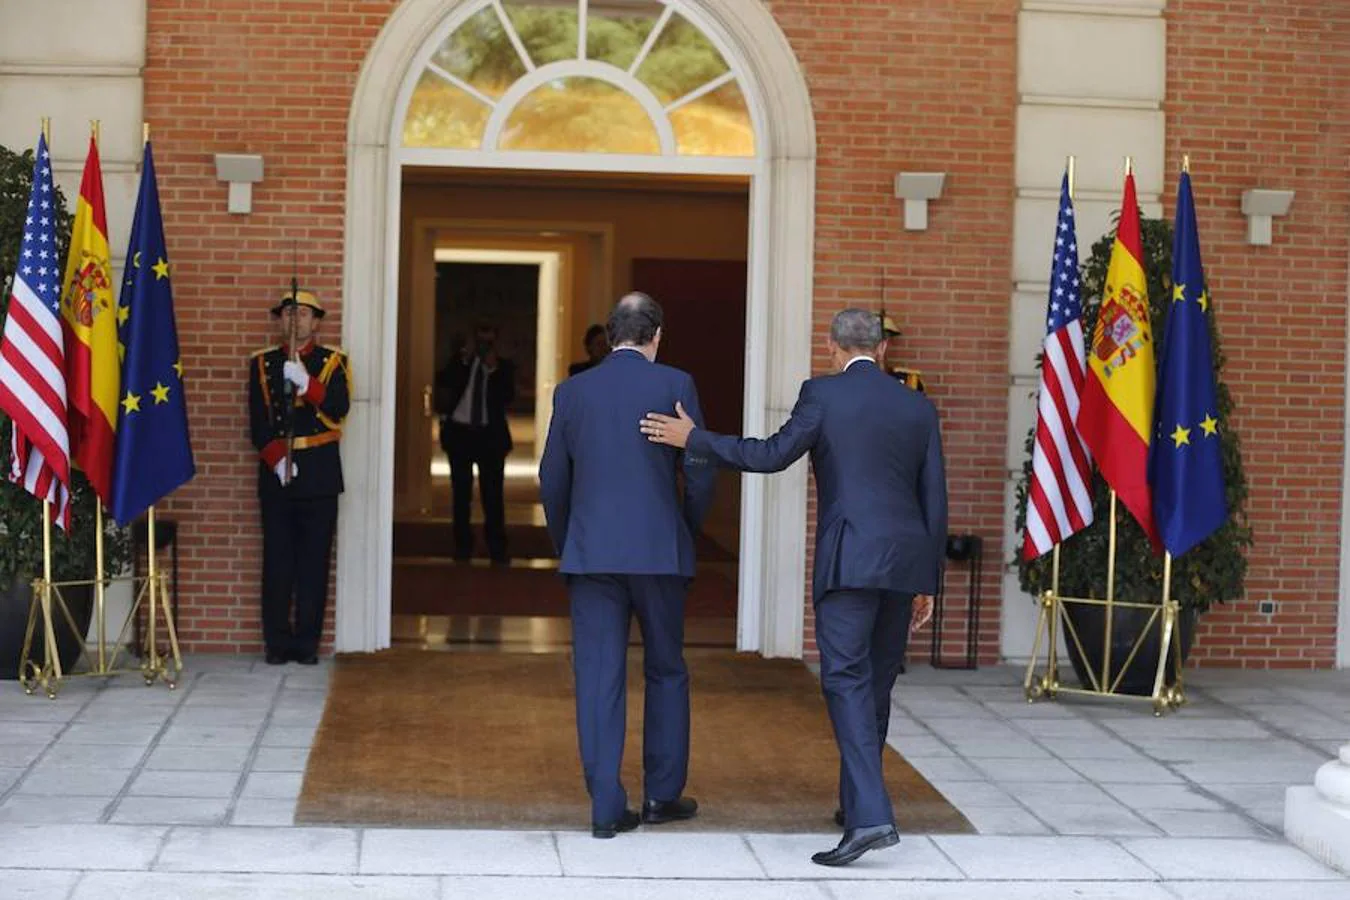 Reunión entre Obama y el presidente Mariano Rajoy en la Moncloa